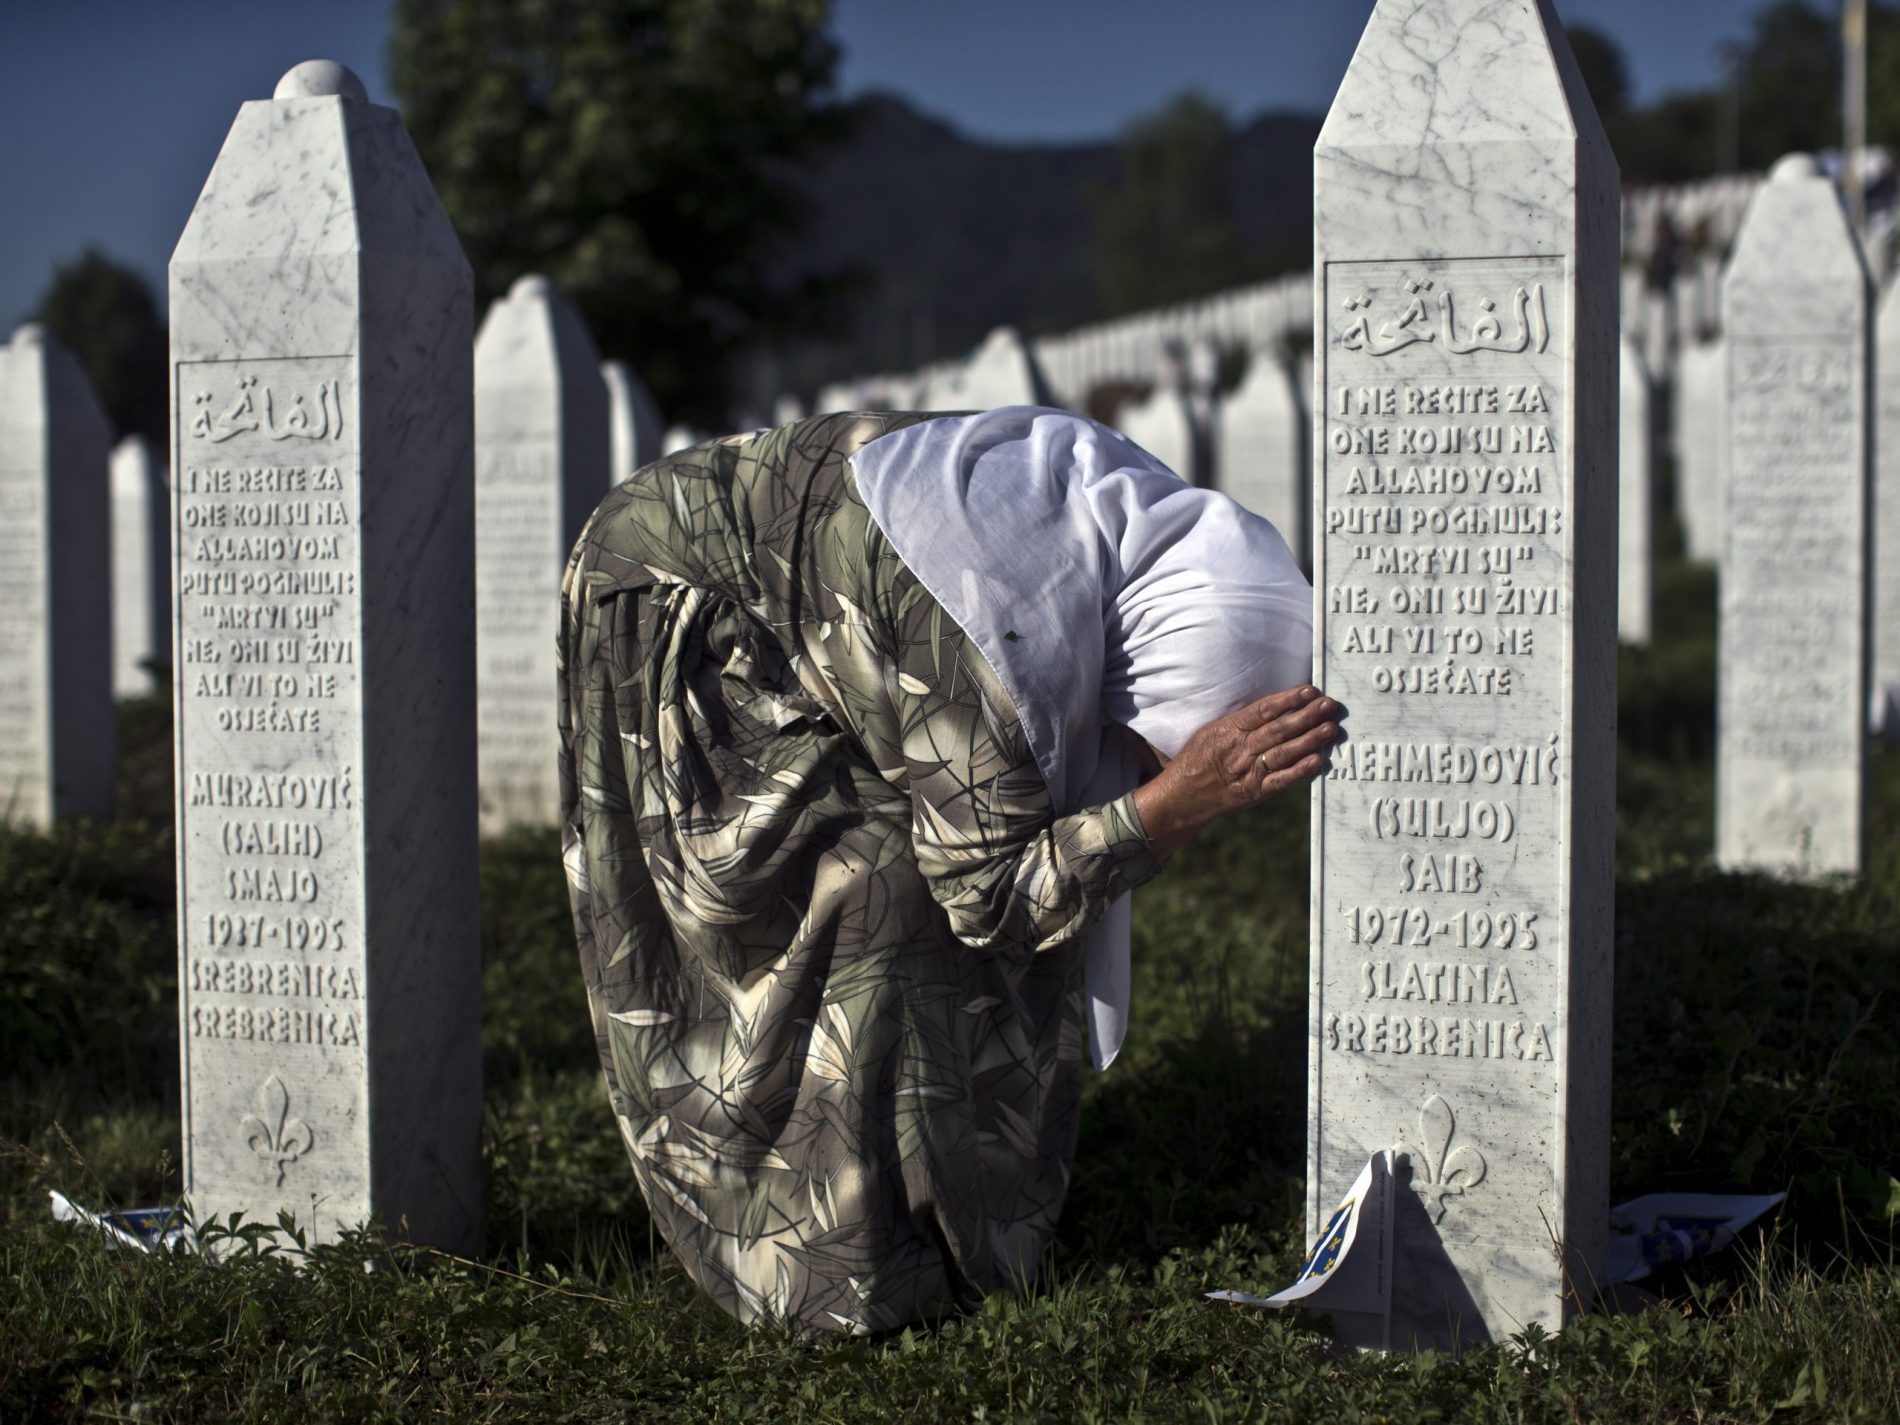 Političkom porazu, Trojka je dodala poniženje. I ne samo sebe, već naroda, države i svih žrtava i porodica žrtava genocida u Srebrenici